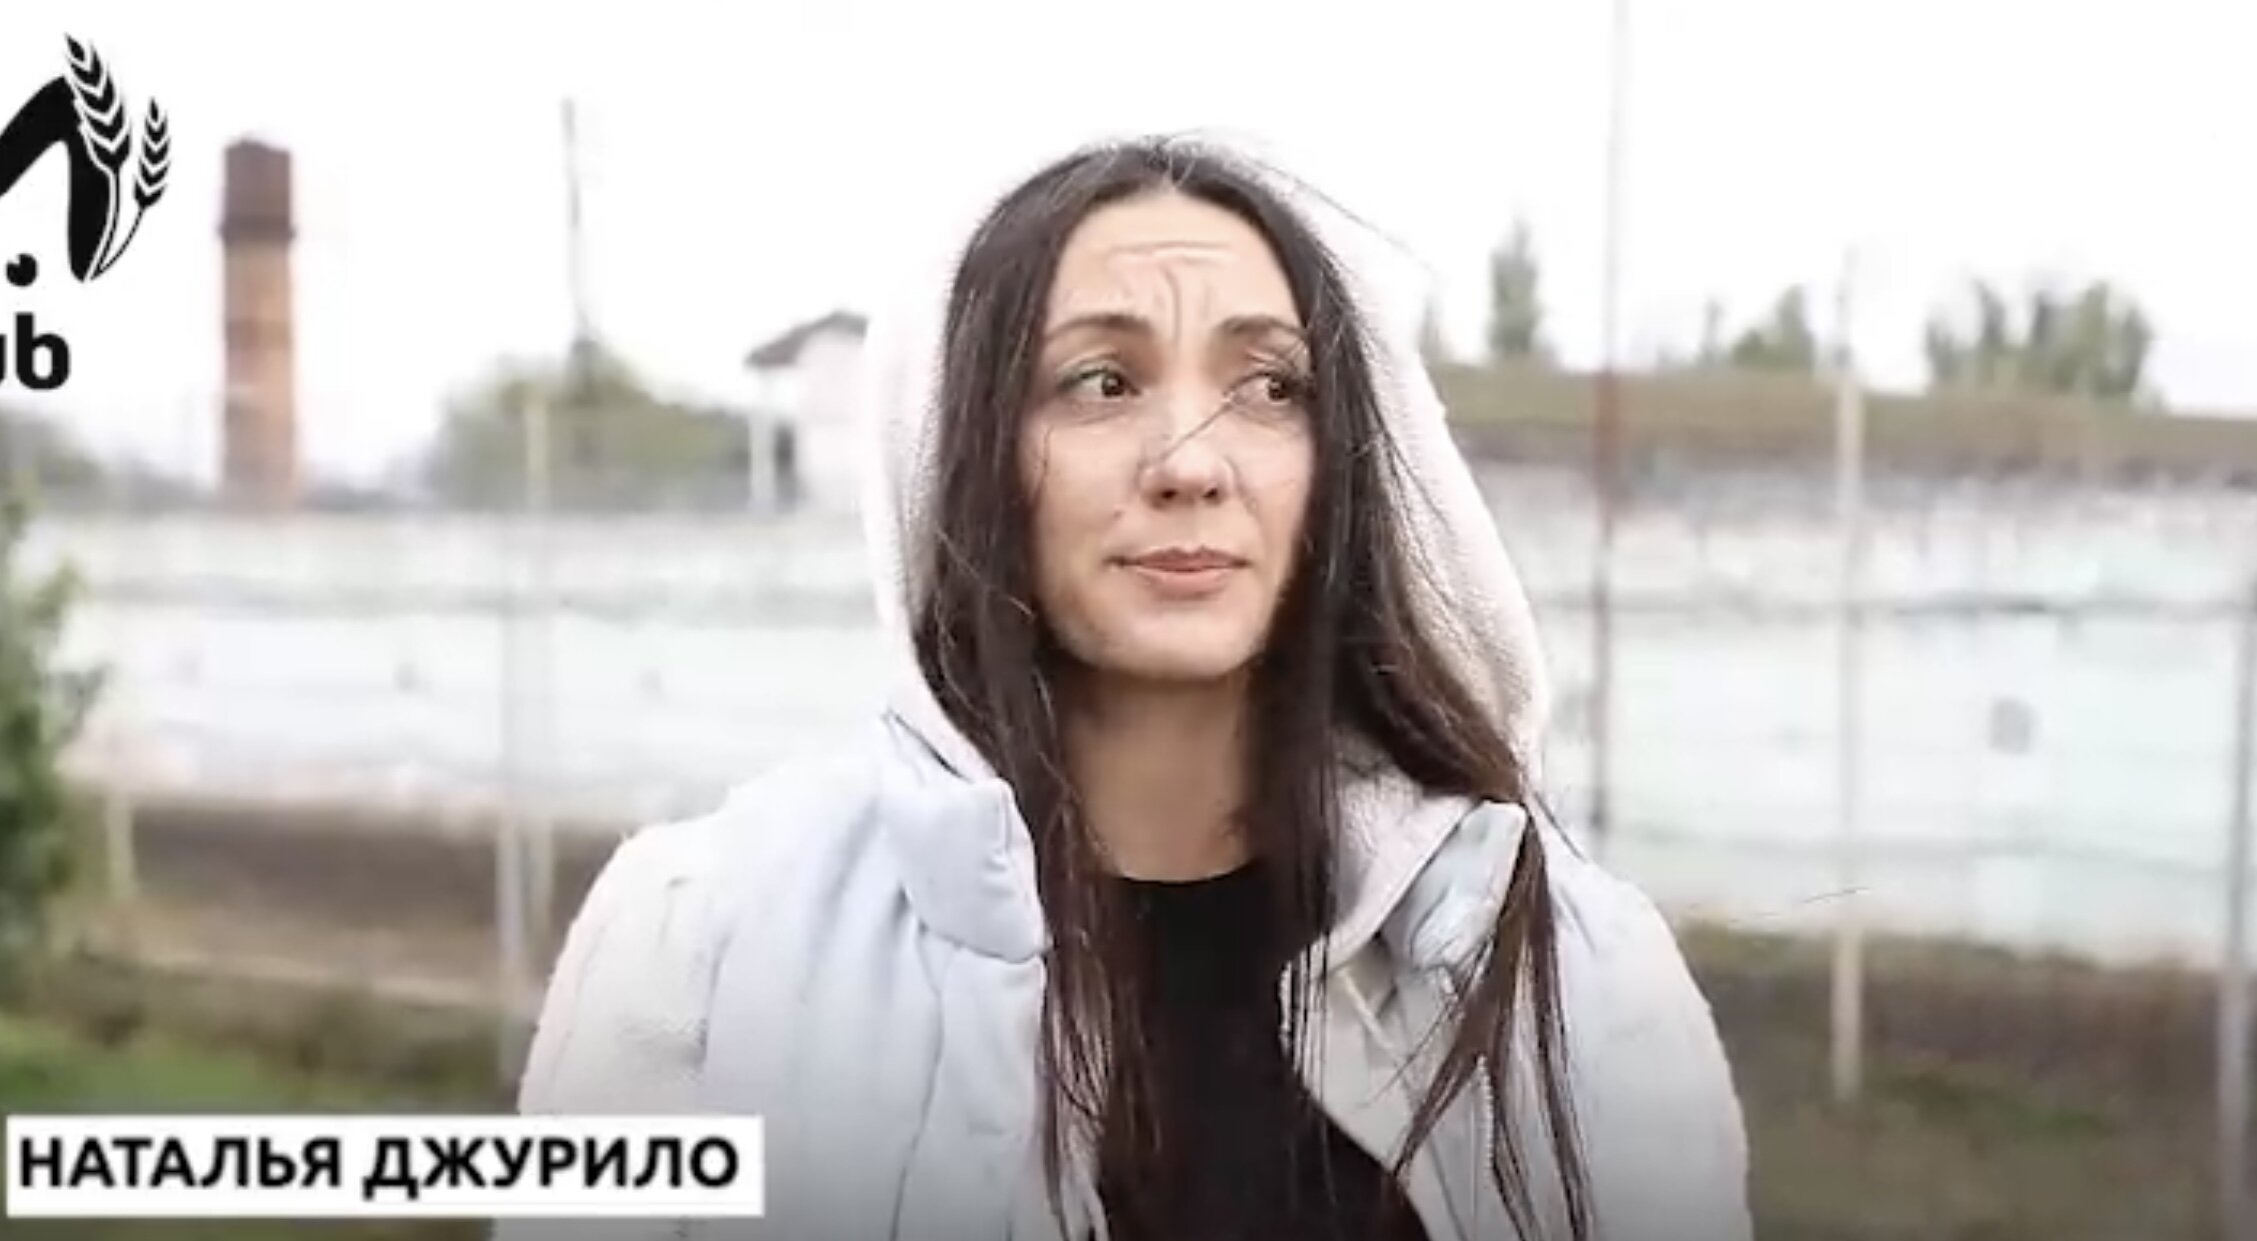 Любовница женатого кондитера Рената Агзамова вышла из тюрьмы и заявила, что будет мстить знаменитому пекарю